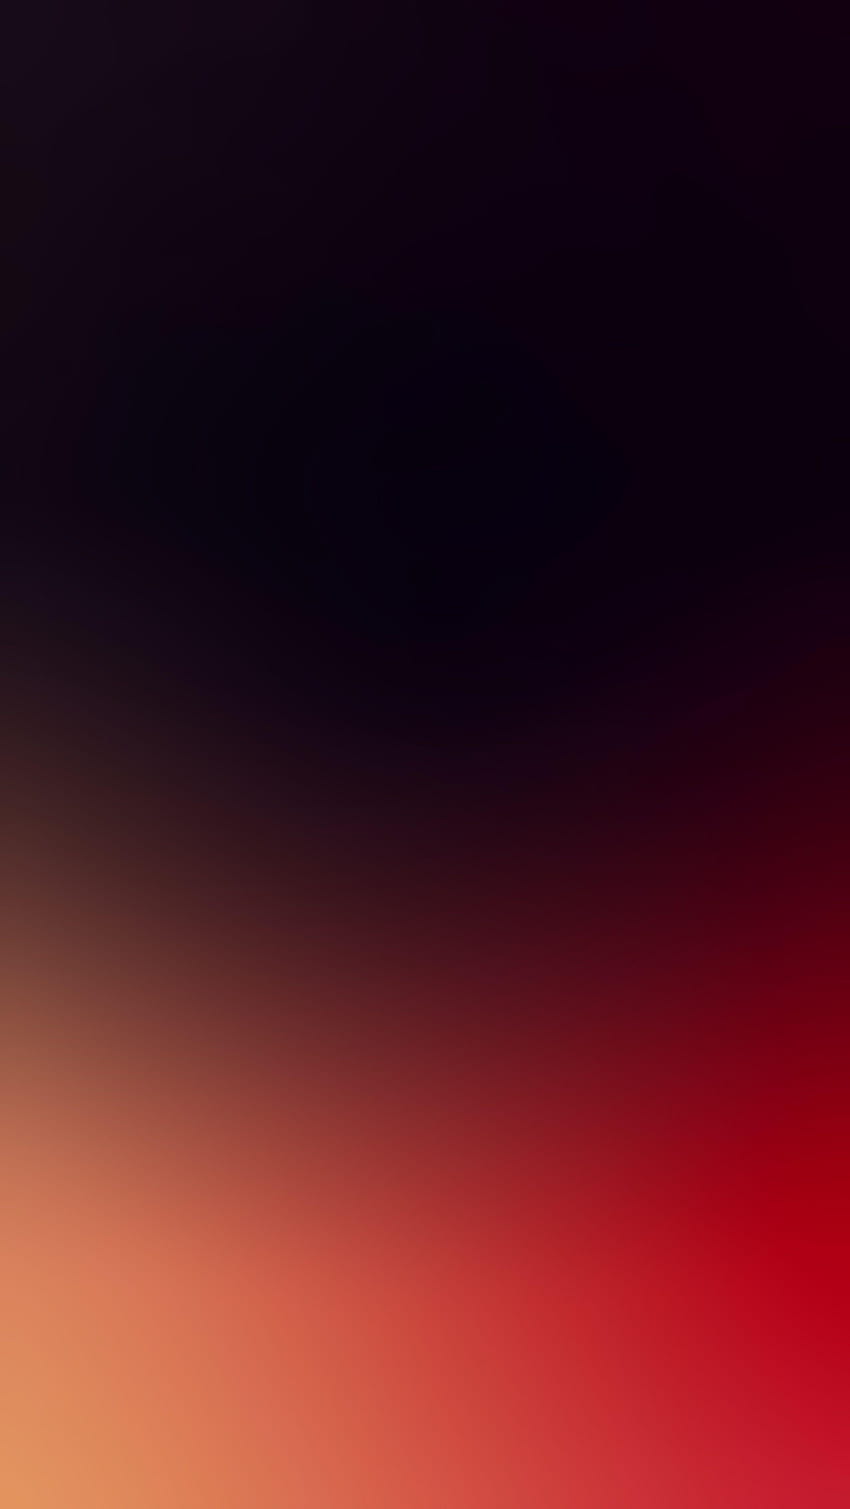 iPhone rojo y negro, ios 14 fondo de pantalla del teléfono